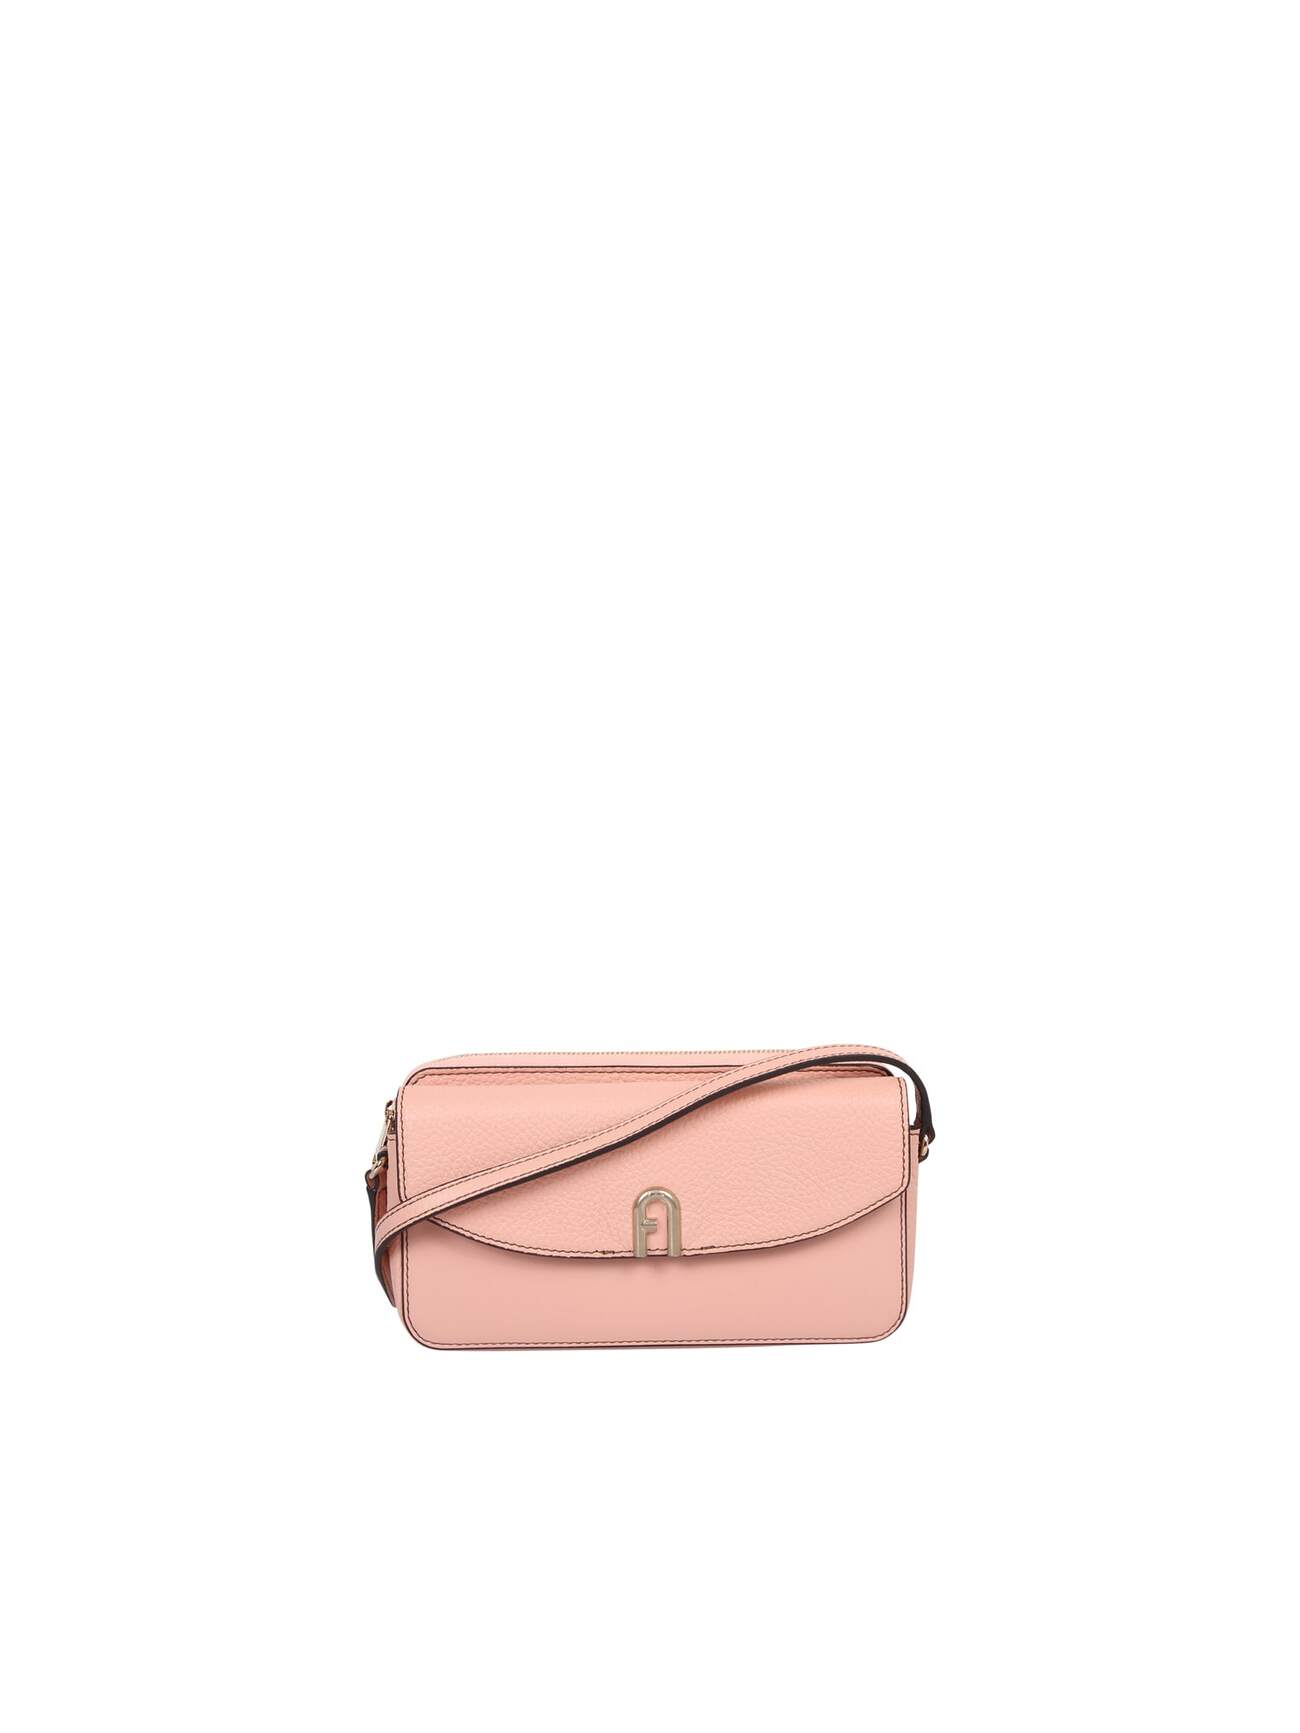 Furla Mini Primula Bag in pink